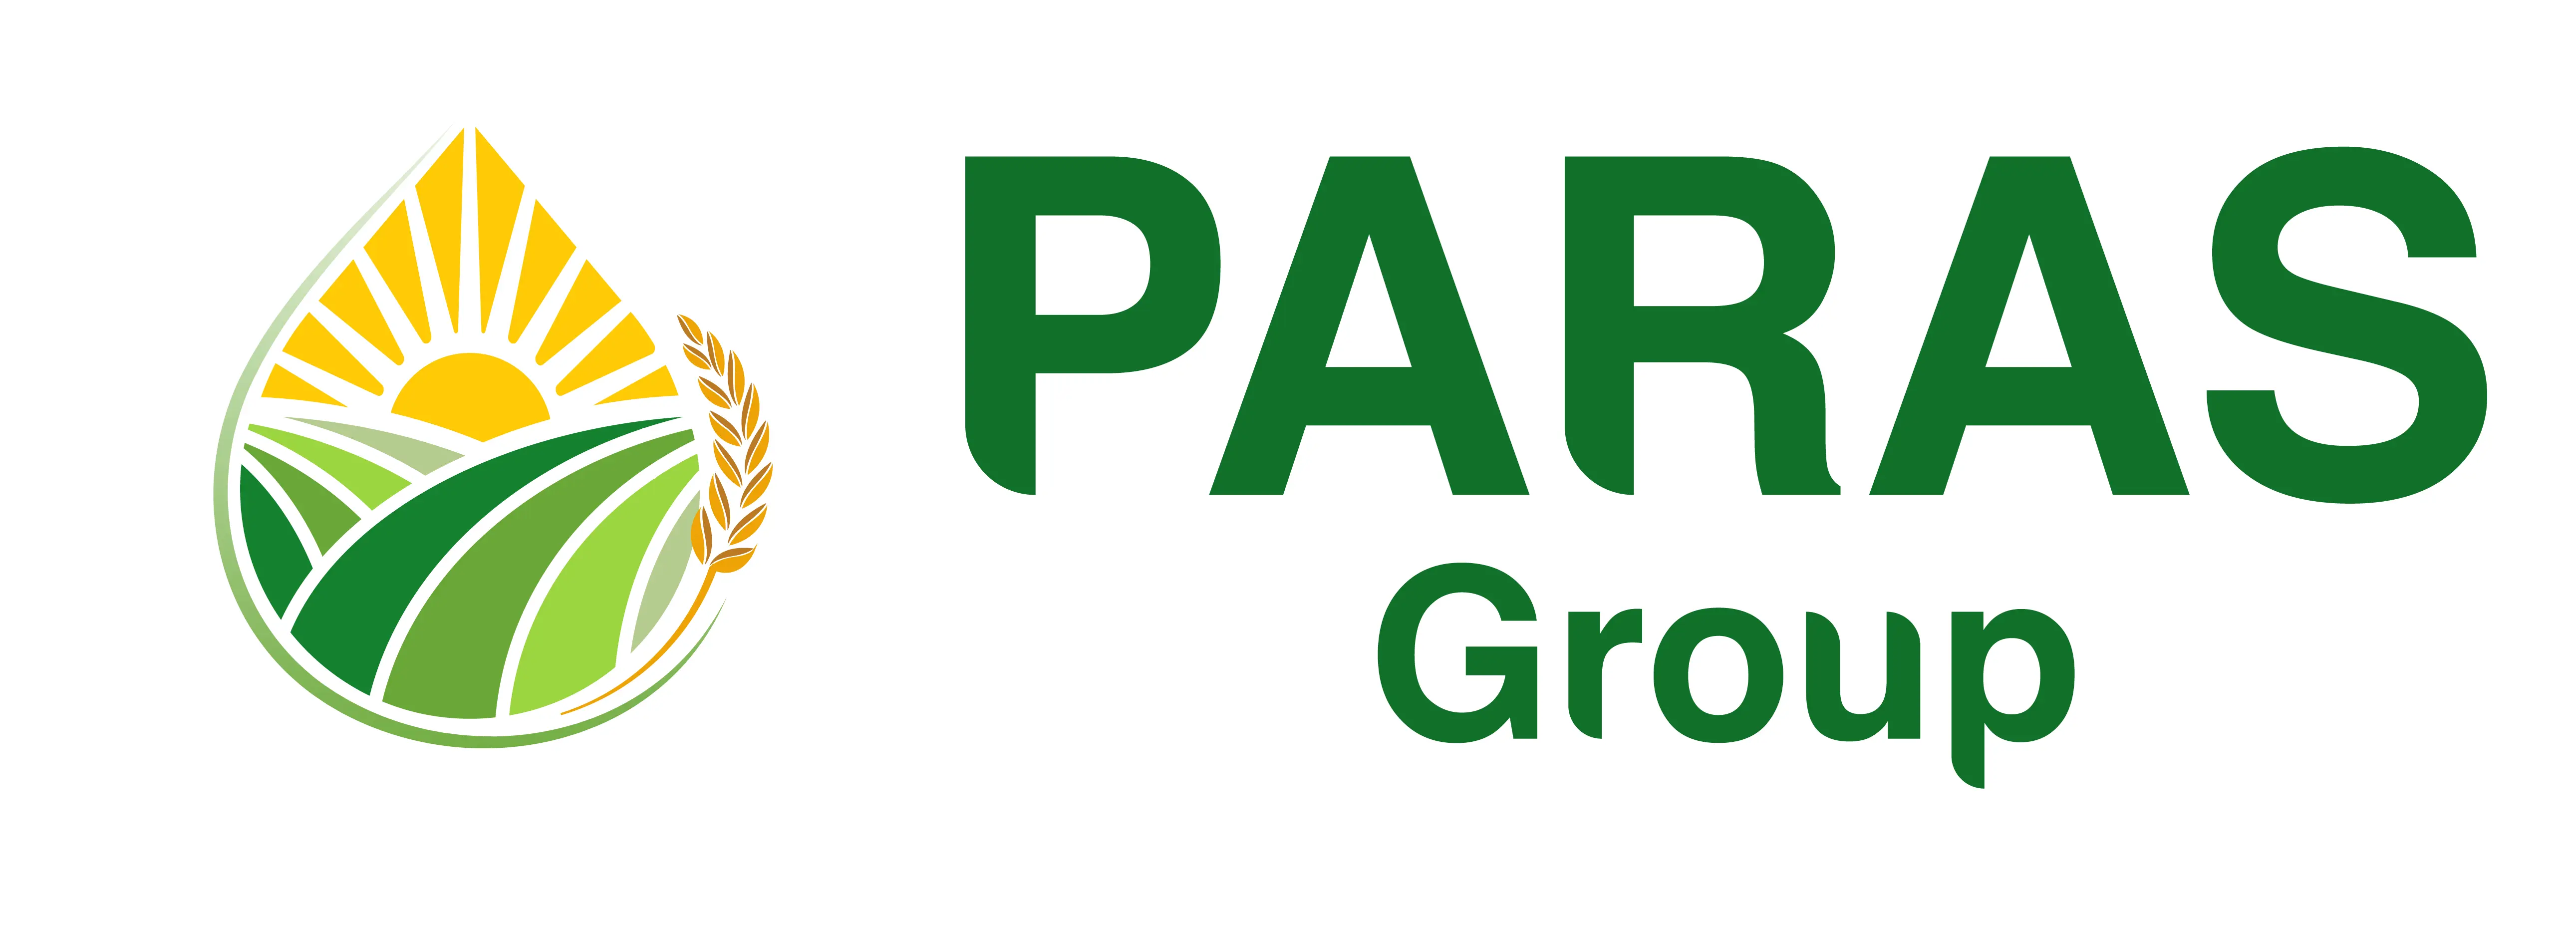 Paras Group Logo